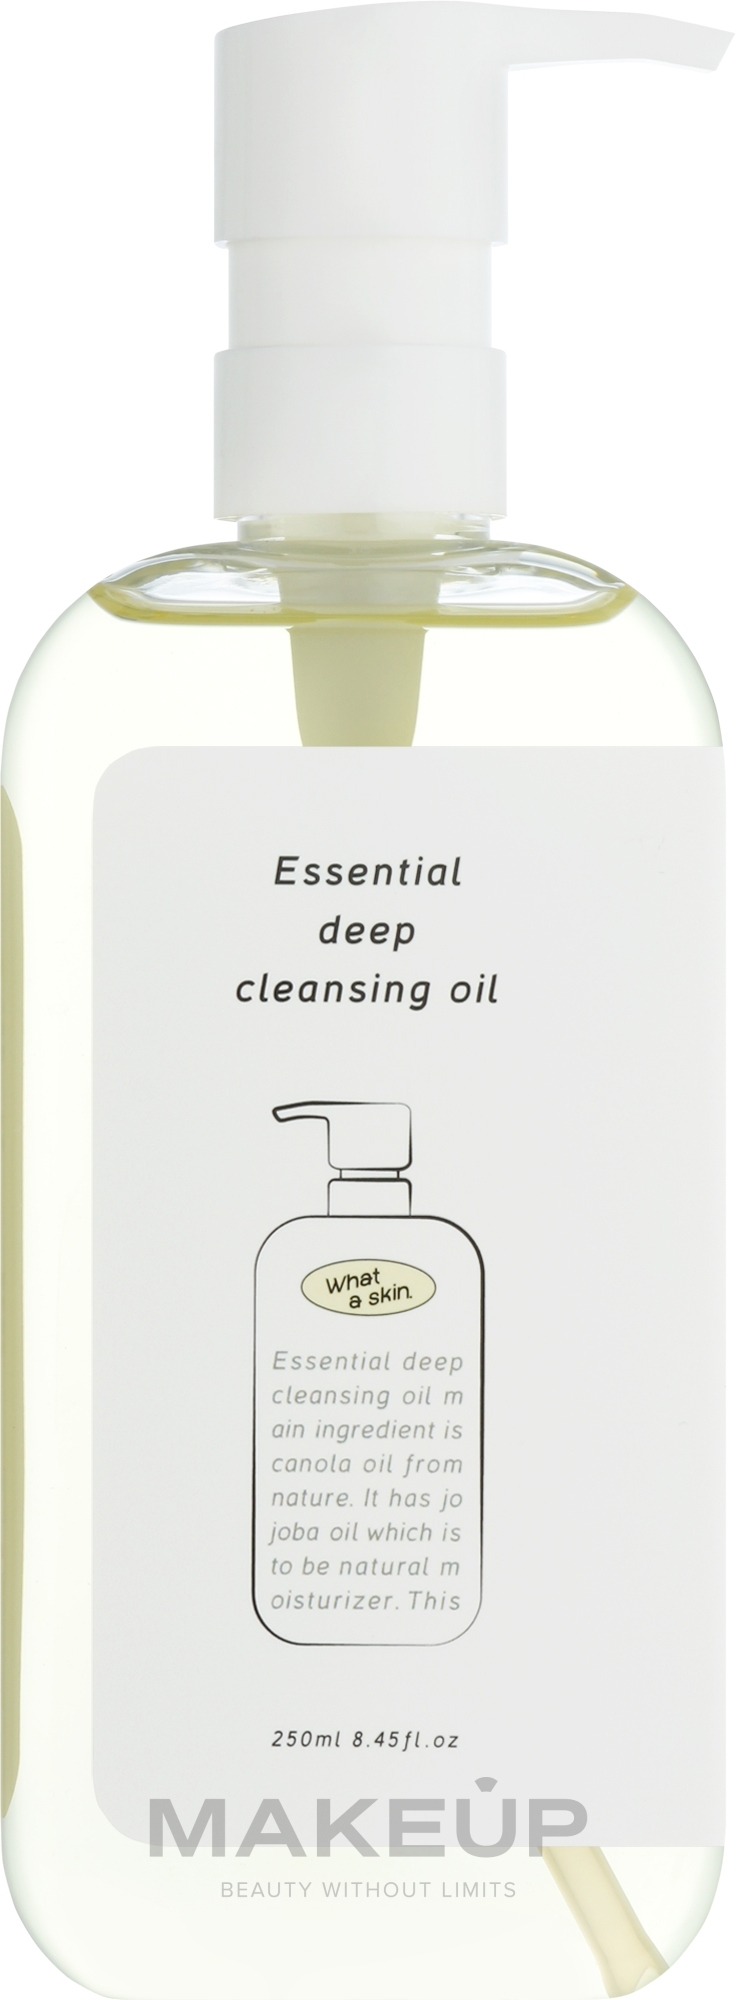 Гидрофильное масло для лица - What A Skin Essential Deep Cleansing Oil — фото 250ml